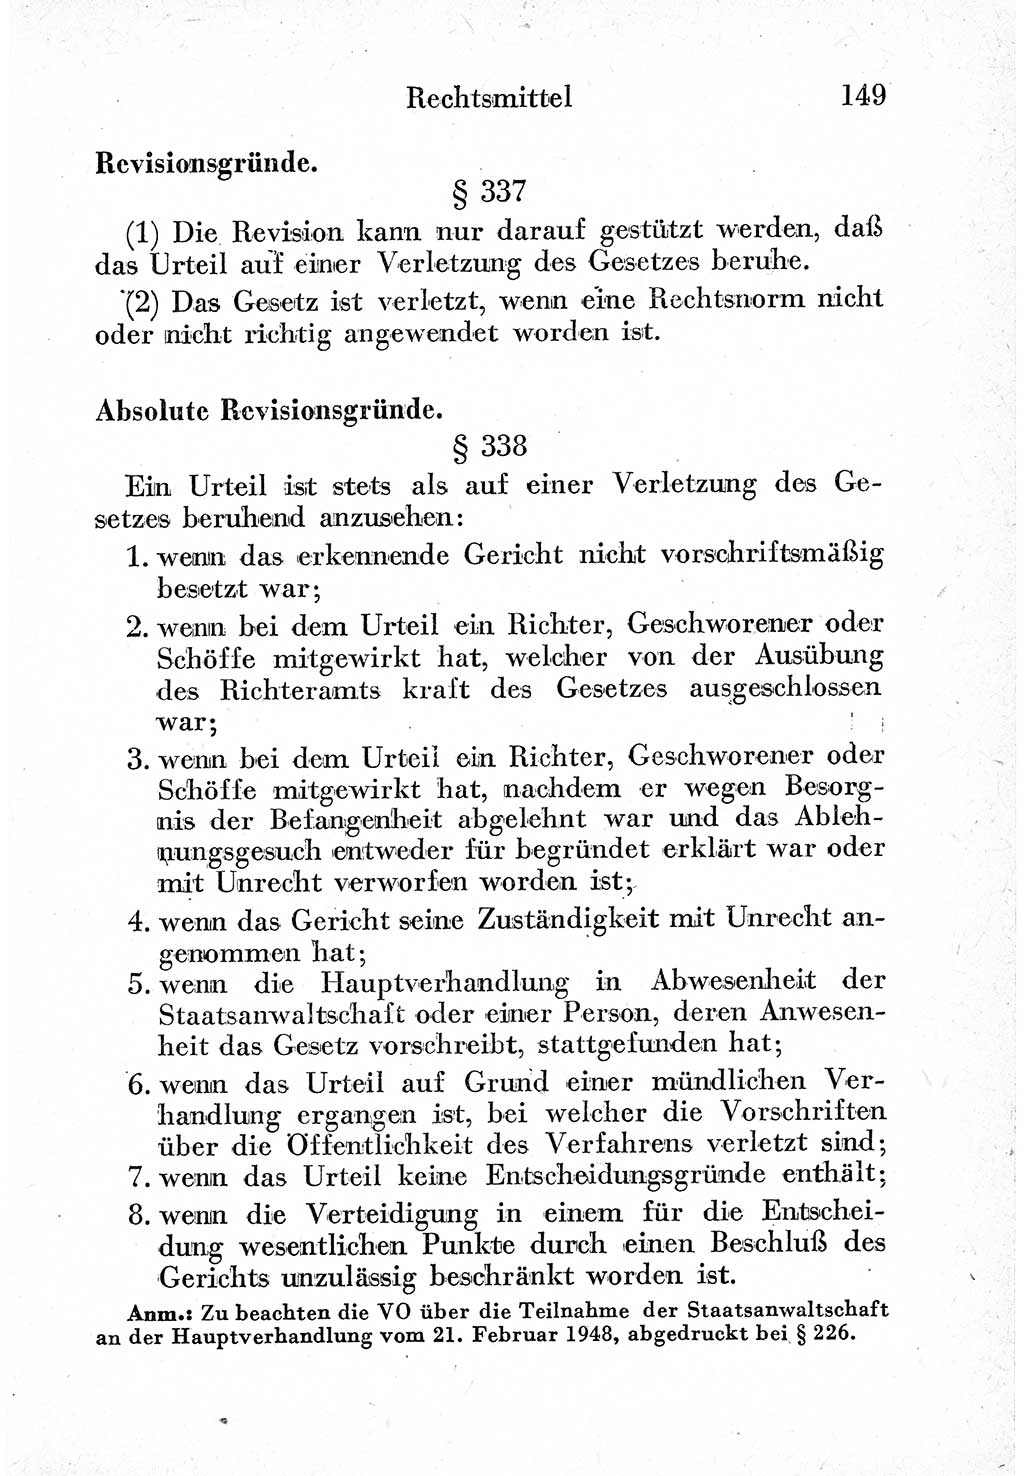 Strafprozeßordnung (StPO), Gerichtsverfassungsgesetz (GVG) und zahlreiche Nebengesetze der sowjetischen Besatzungszone (SBZ) in Deutschland 1949, Seite 149 (StPO GVG Ges. SBZ Dtl. 1949, S. 149)